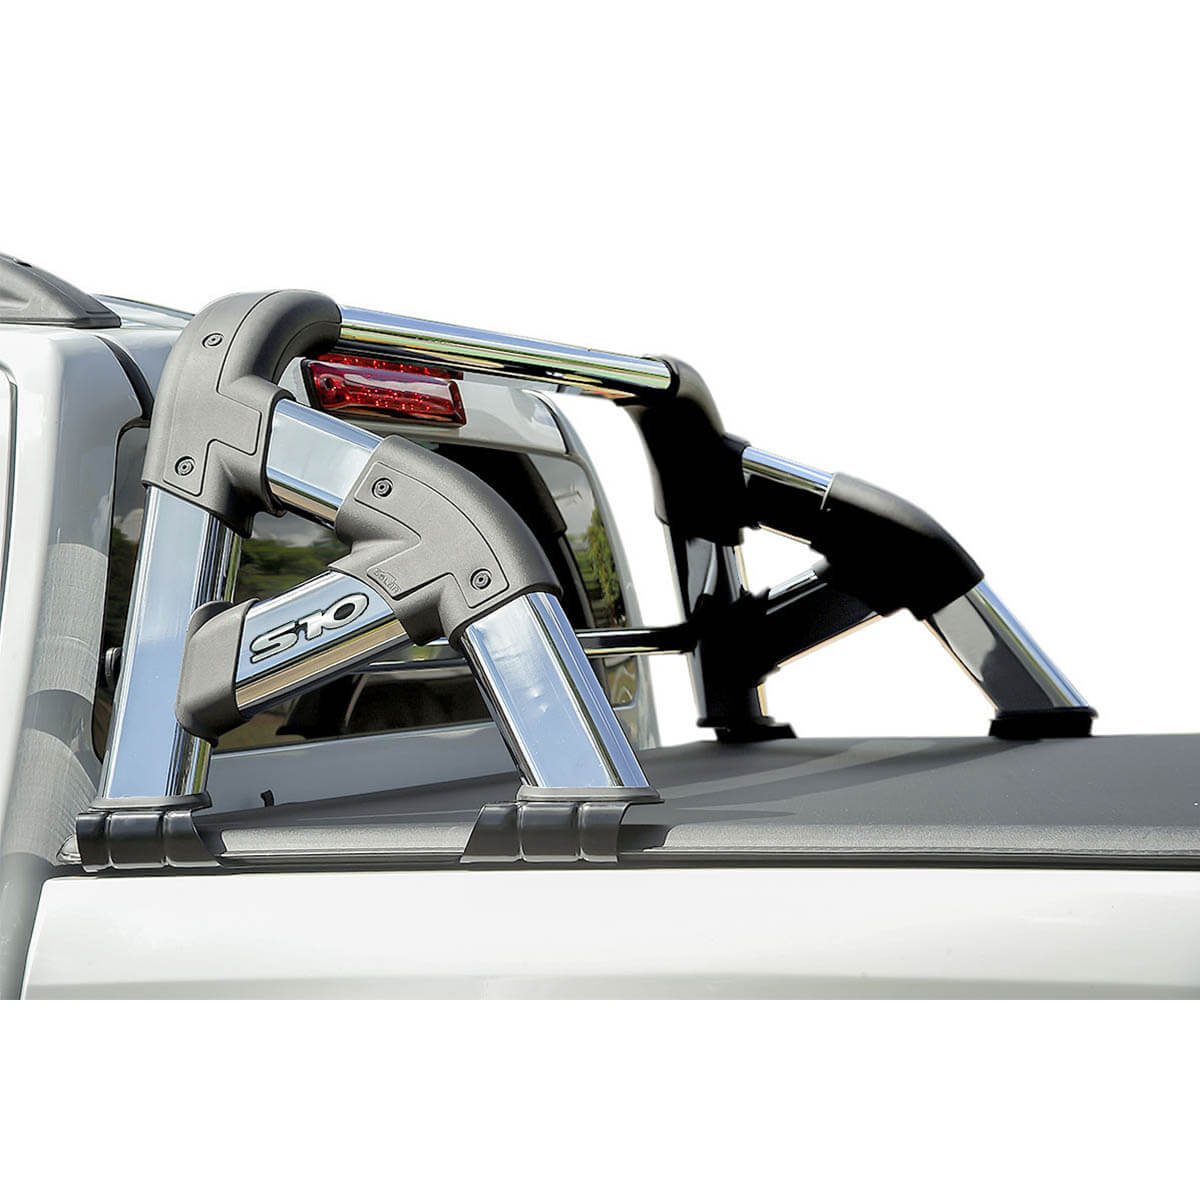 Santo antônio Solar Exclusive cromado S10 cabine dupla 2012 a 2023 com barra de vidro